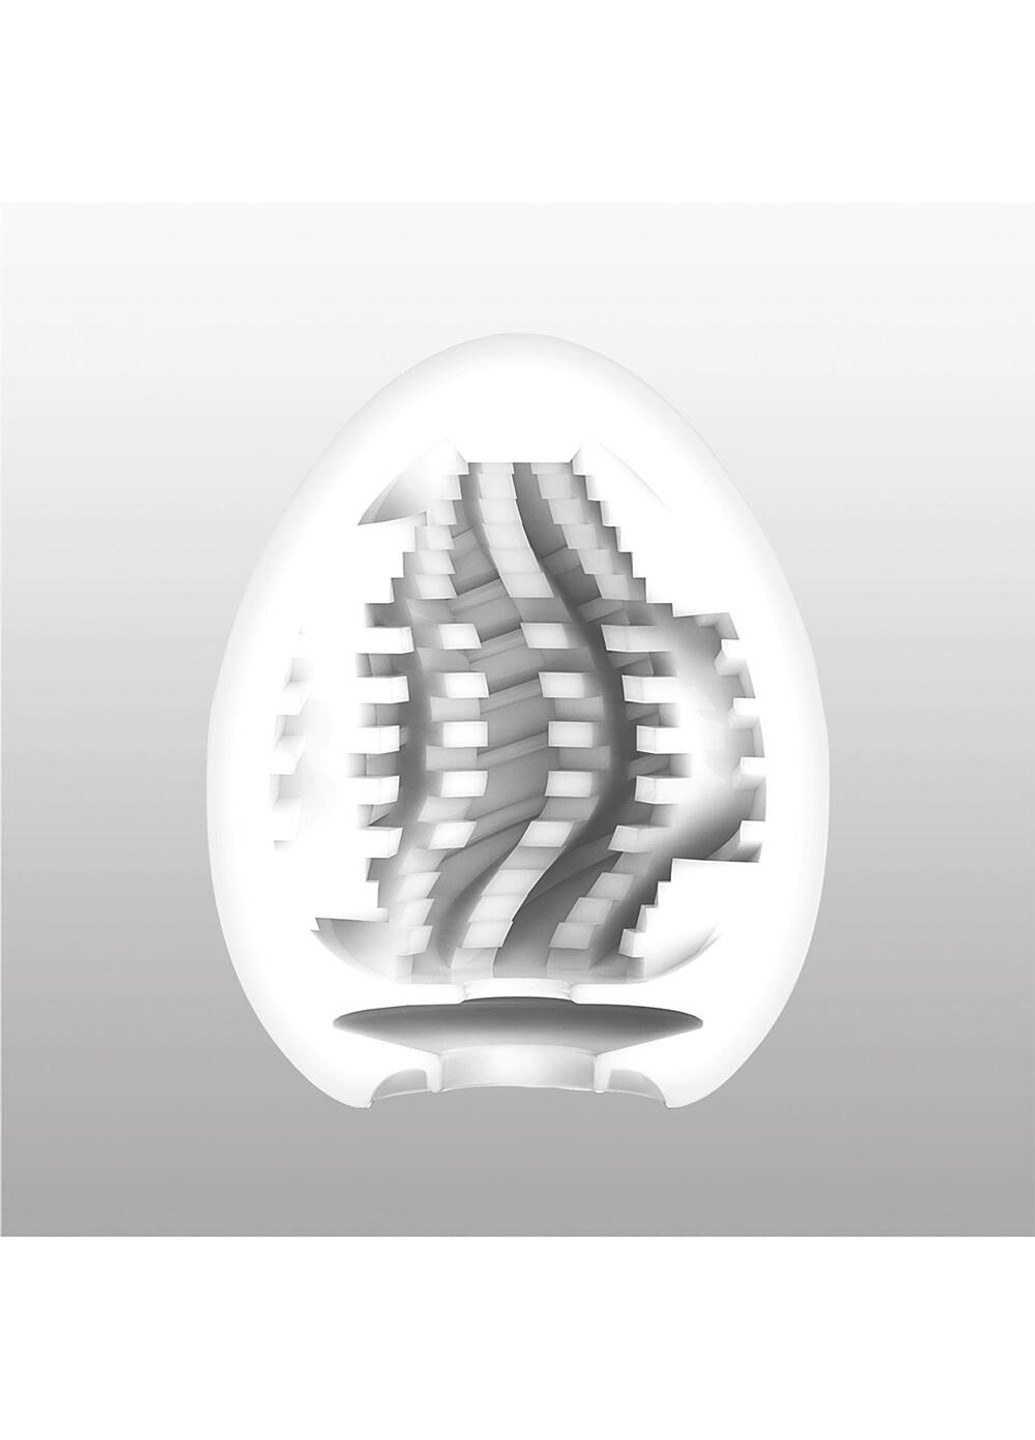 Мастурбатор-яйце Egg Tornado зі спірально-геометричним рельєфом Tenga (254738009)